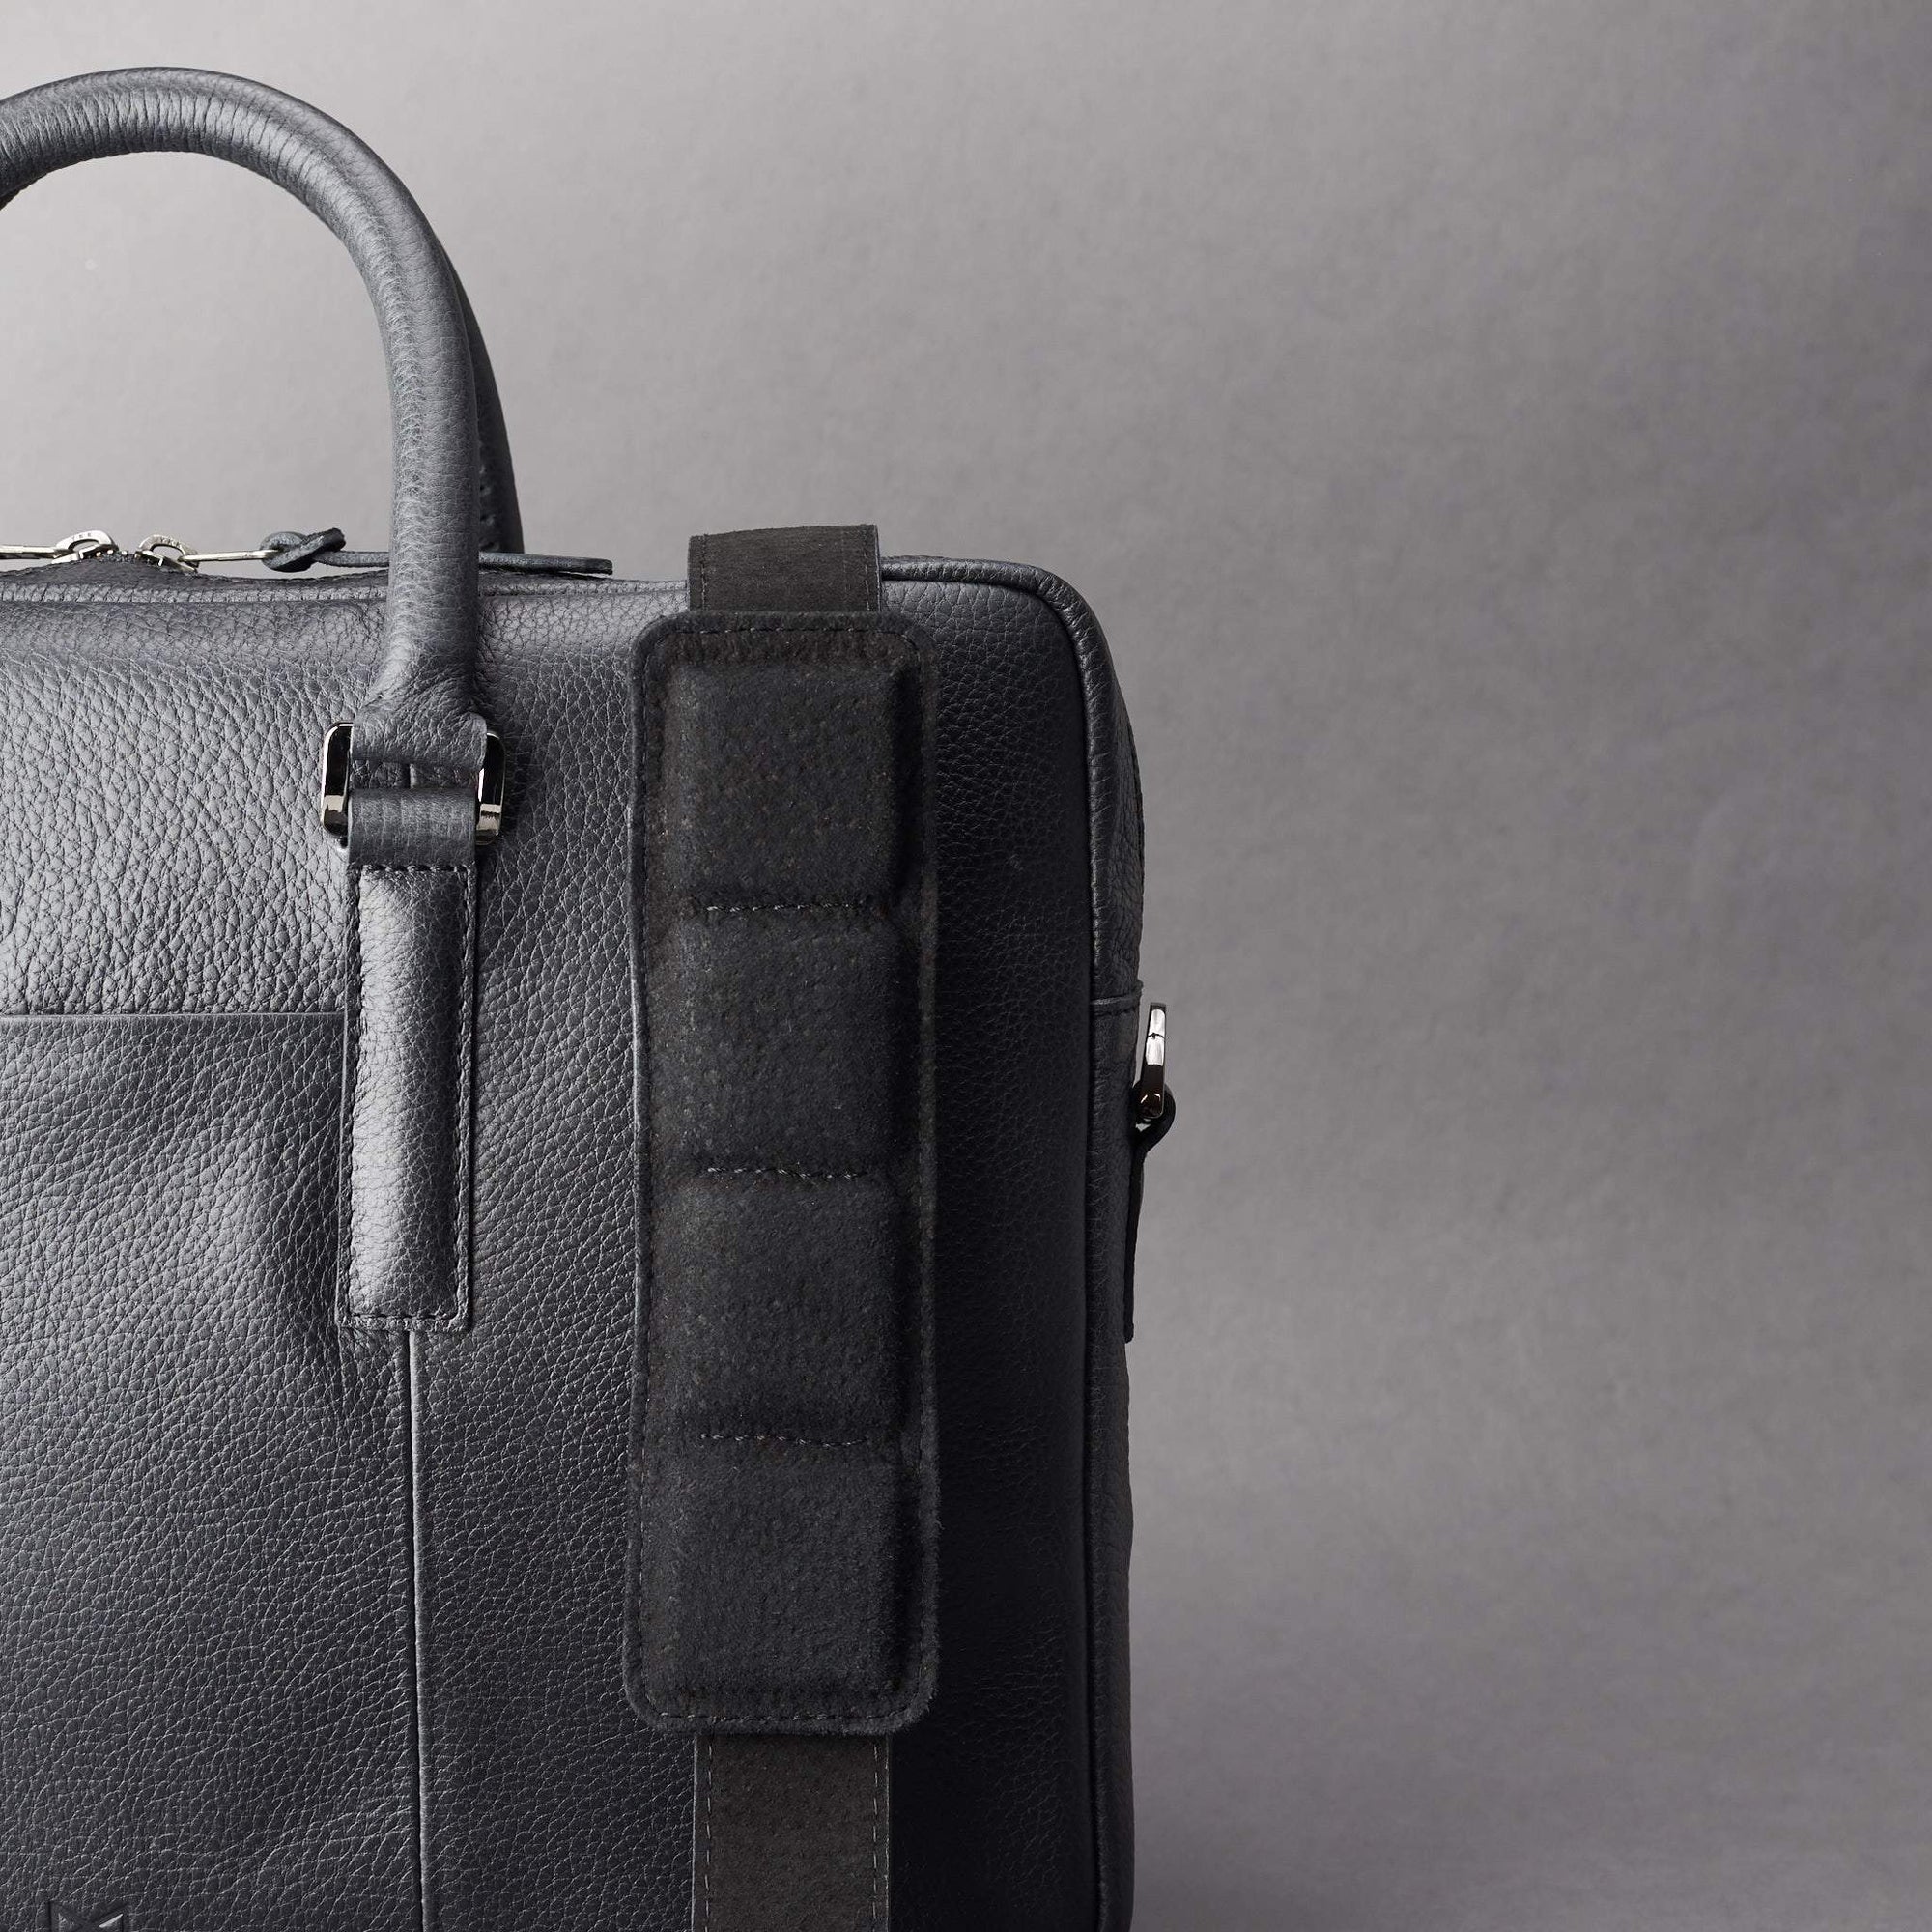 Detail of strap of shoulder bag. Black leather briefcase laptop bag for men. Gazeli laptop briefcase by Capra Leather.